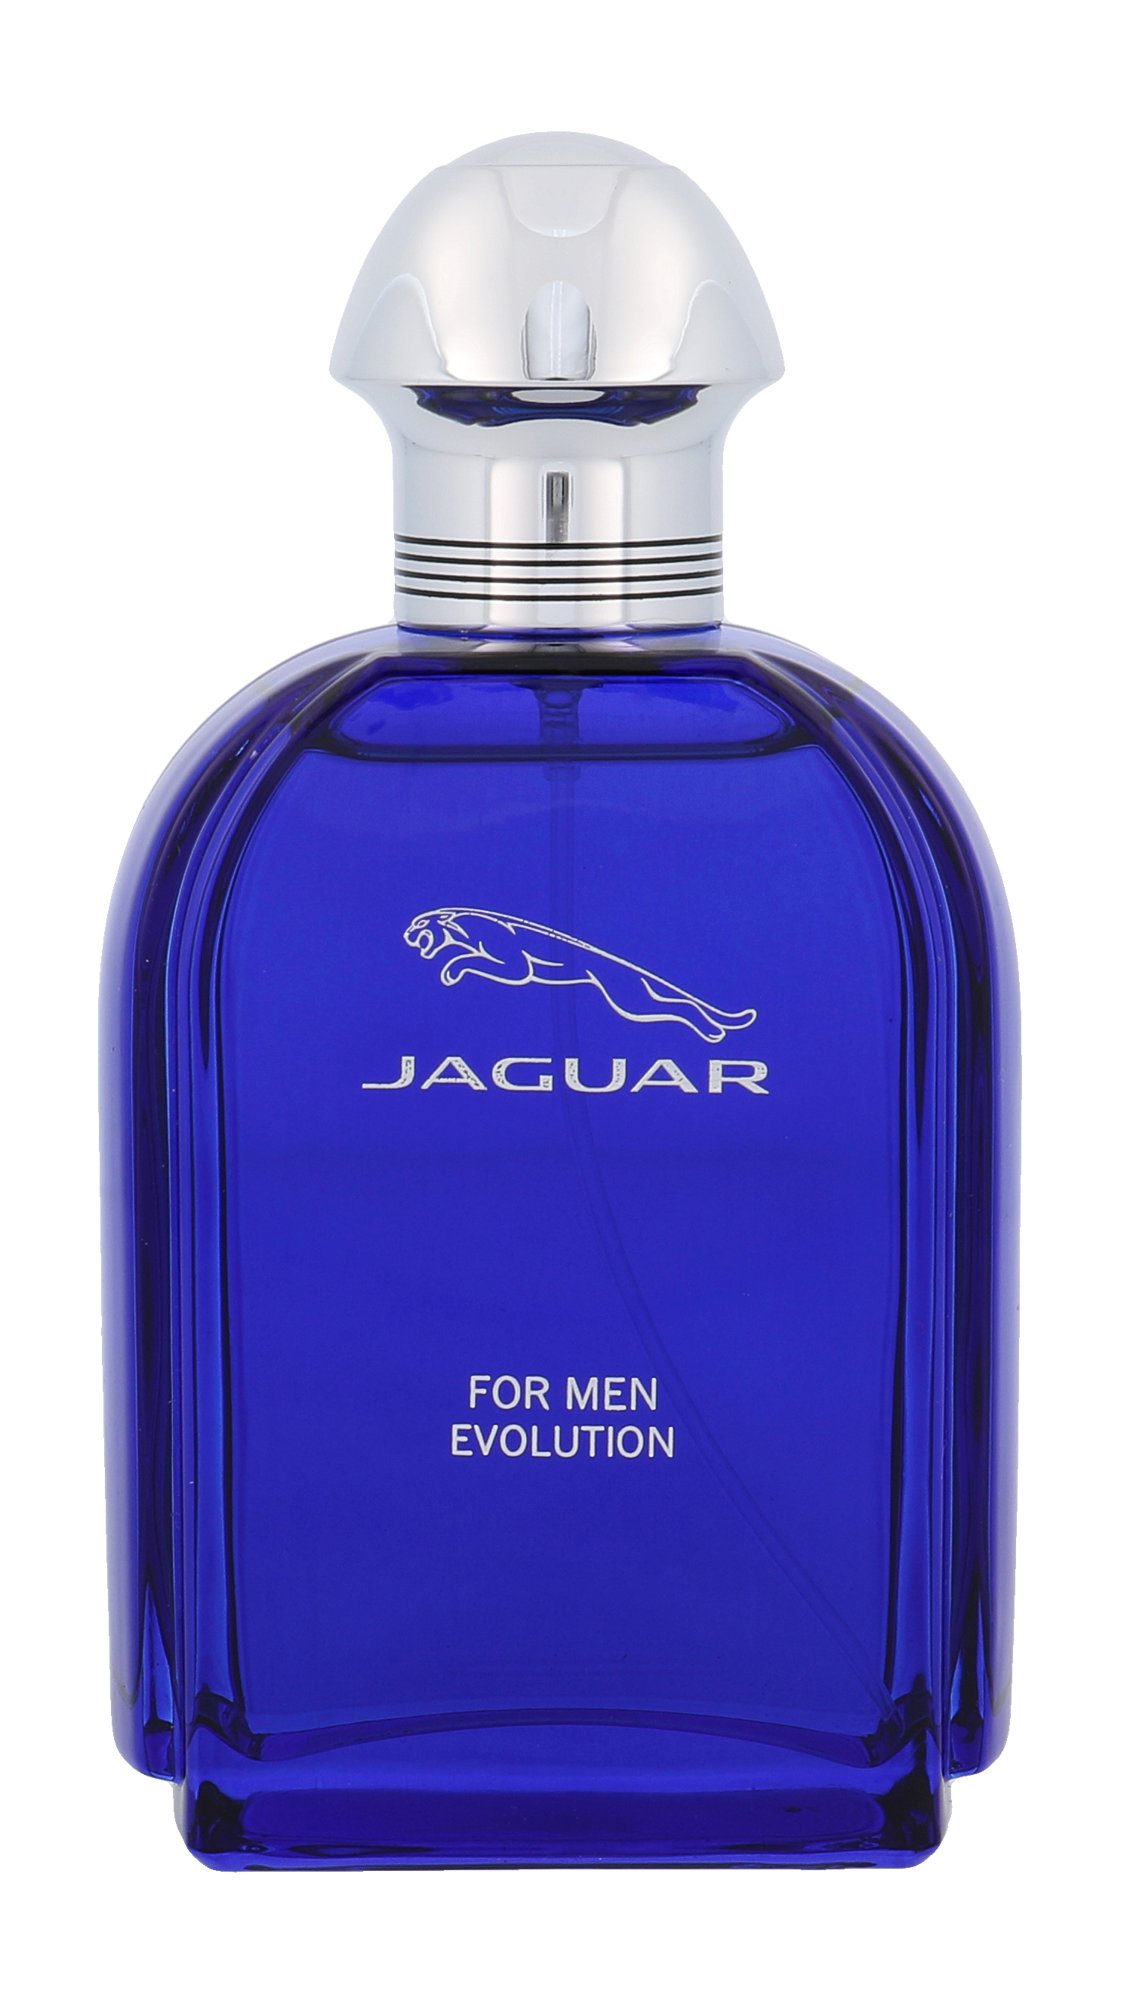 Jaguar For Men Evolution, Toaletní voda 90ml - Tester